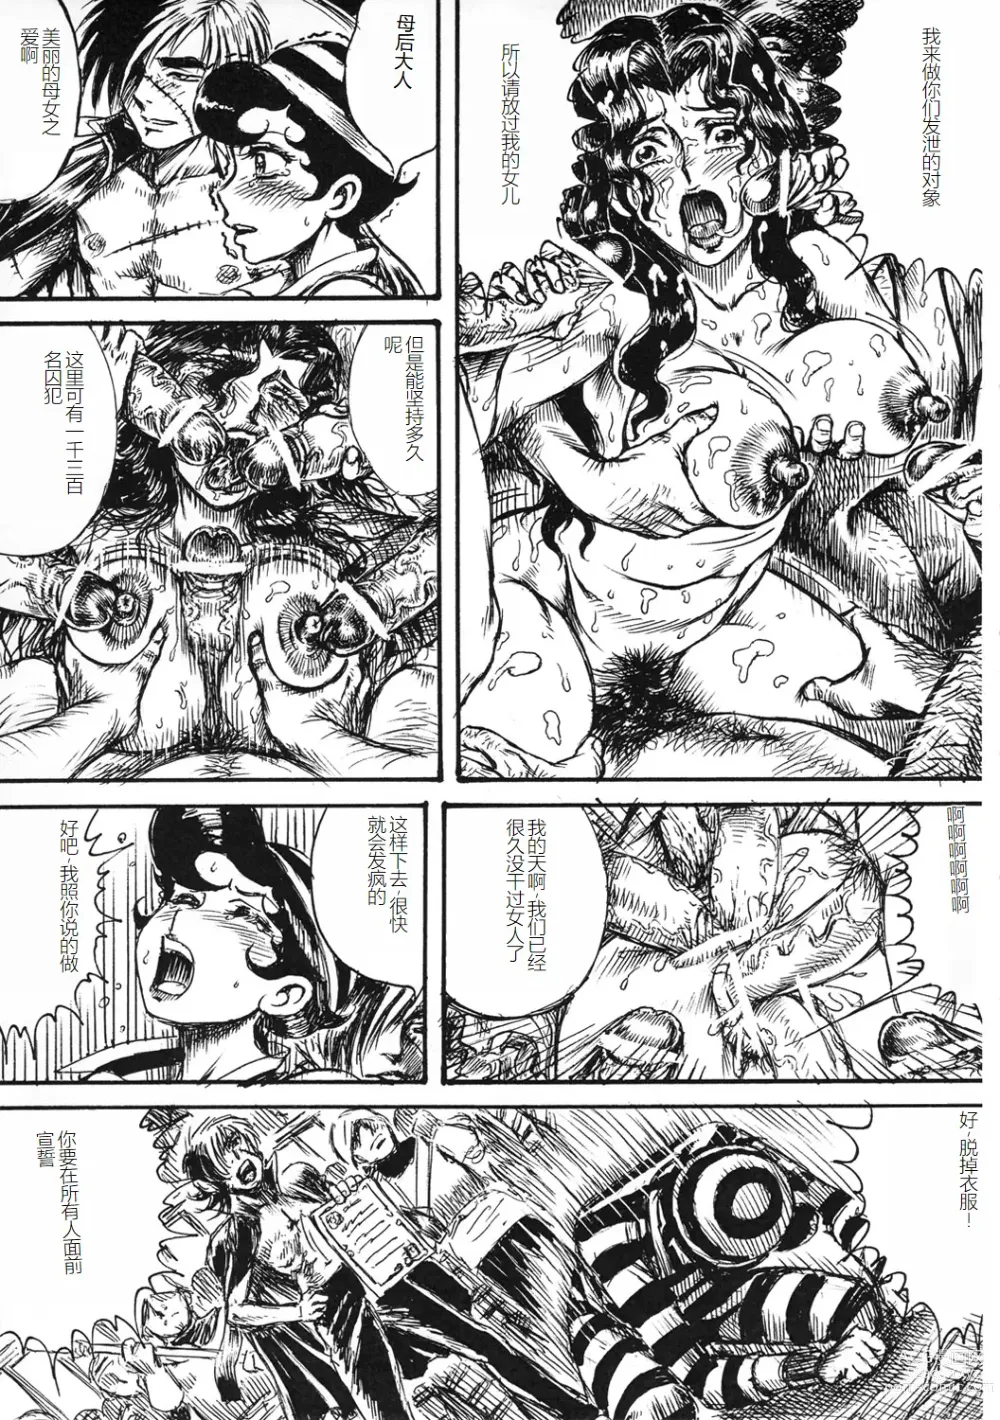 Page 34 of doujinshi Youjinbou Otaku Matsuri 8